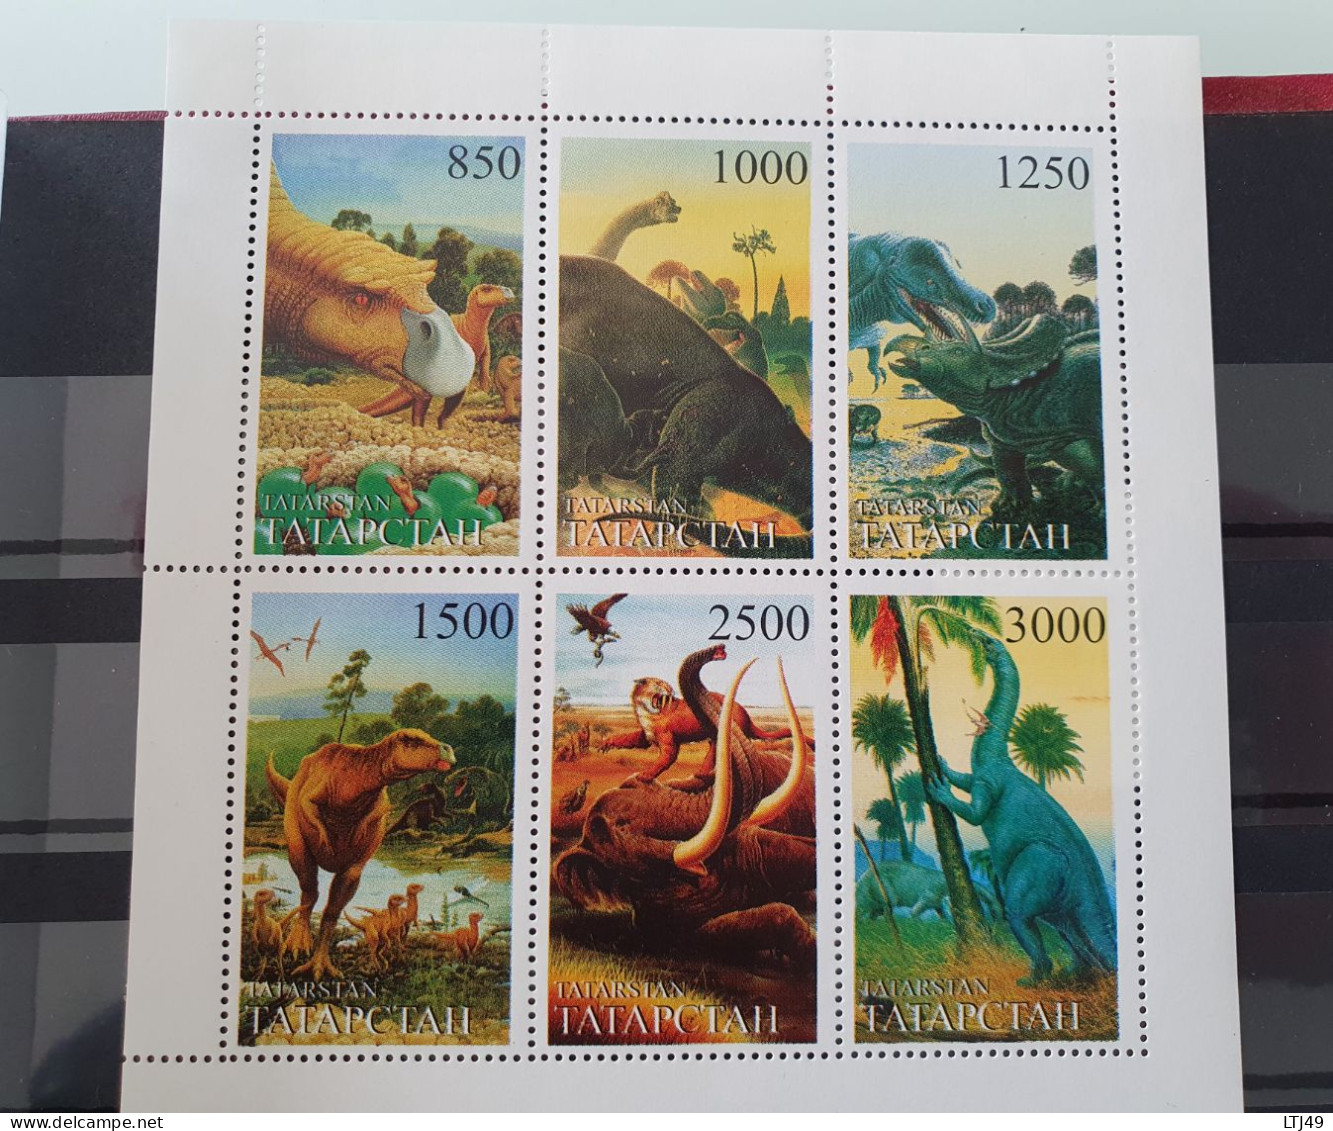 Lot de 3 albums de timbres( +2175 timbres) exceptionnel sur les thème des dinosaures/ Animaux préhistoriques